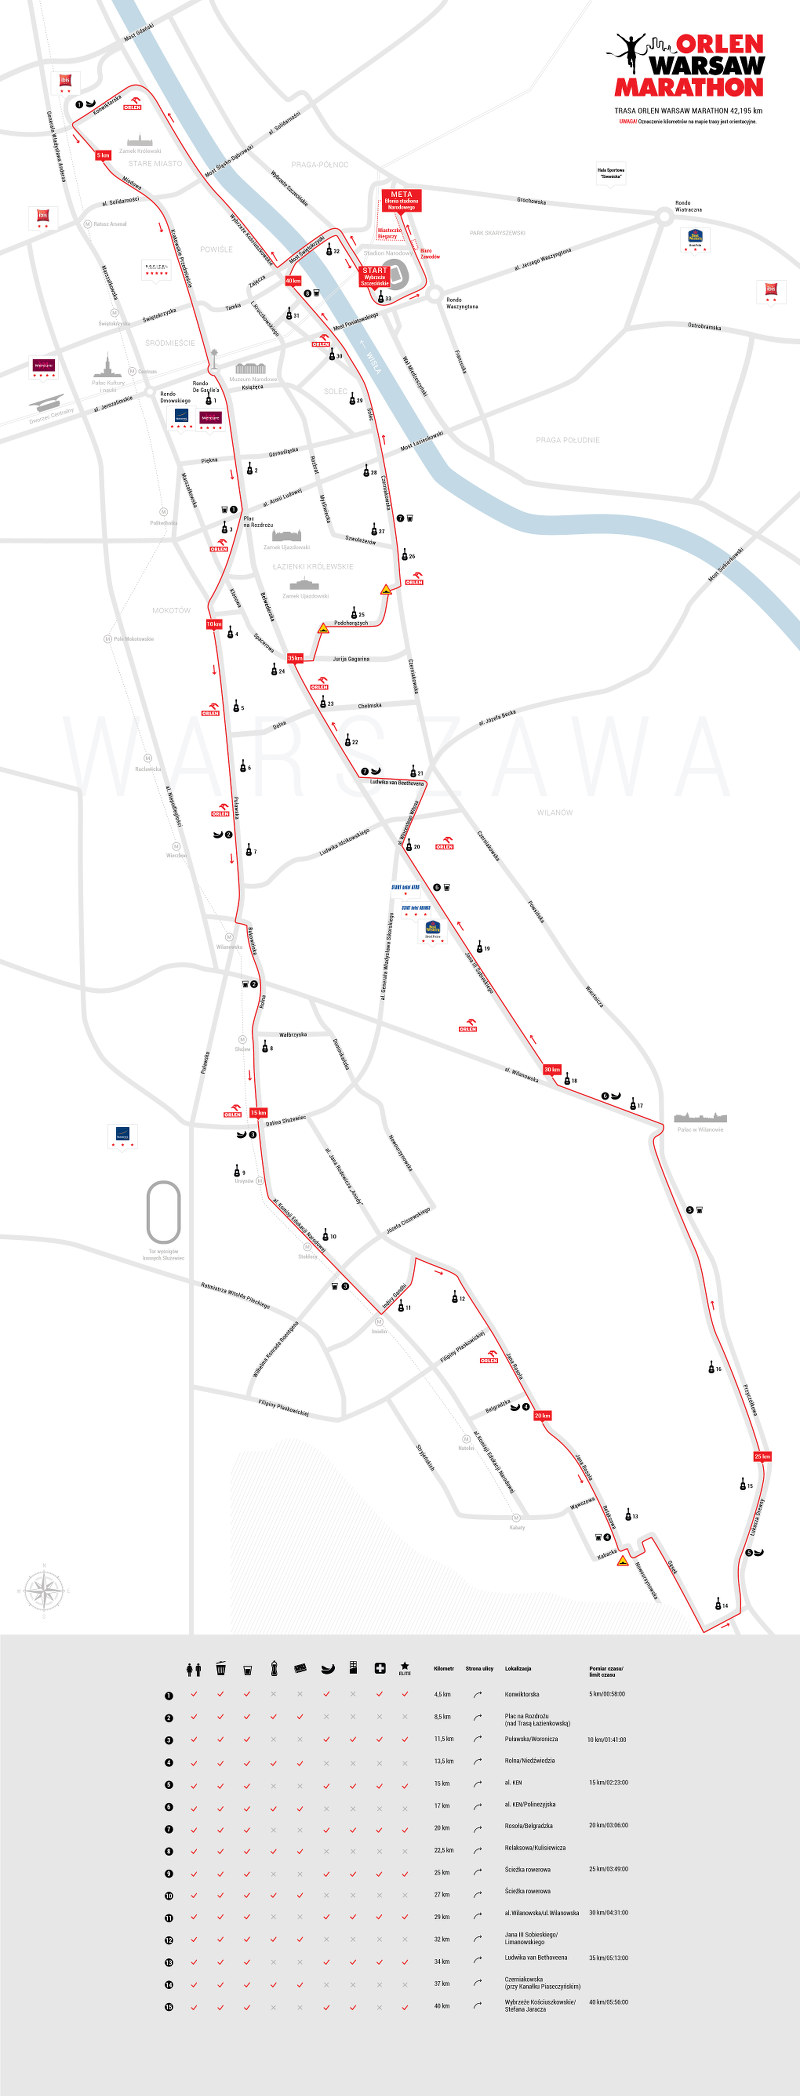 Orlen Warsaw Marathon 2015 trasa